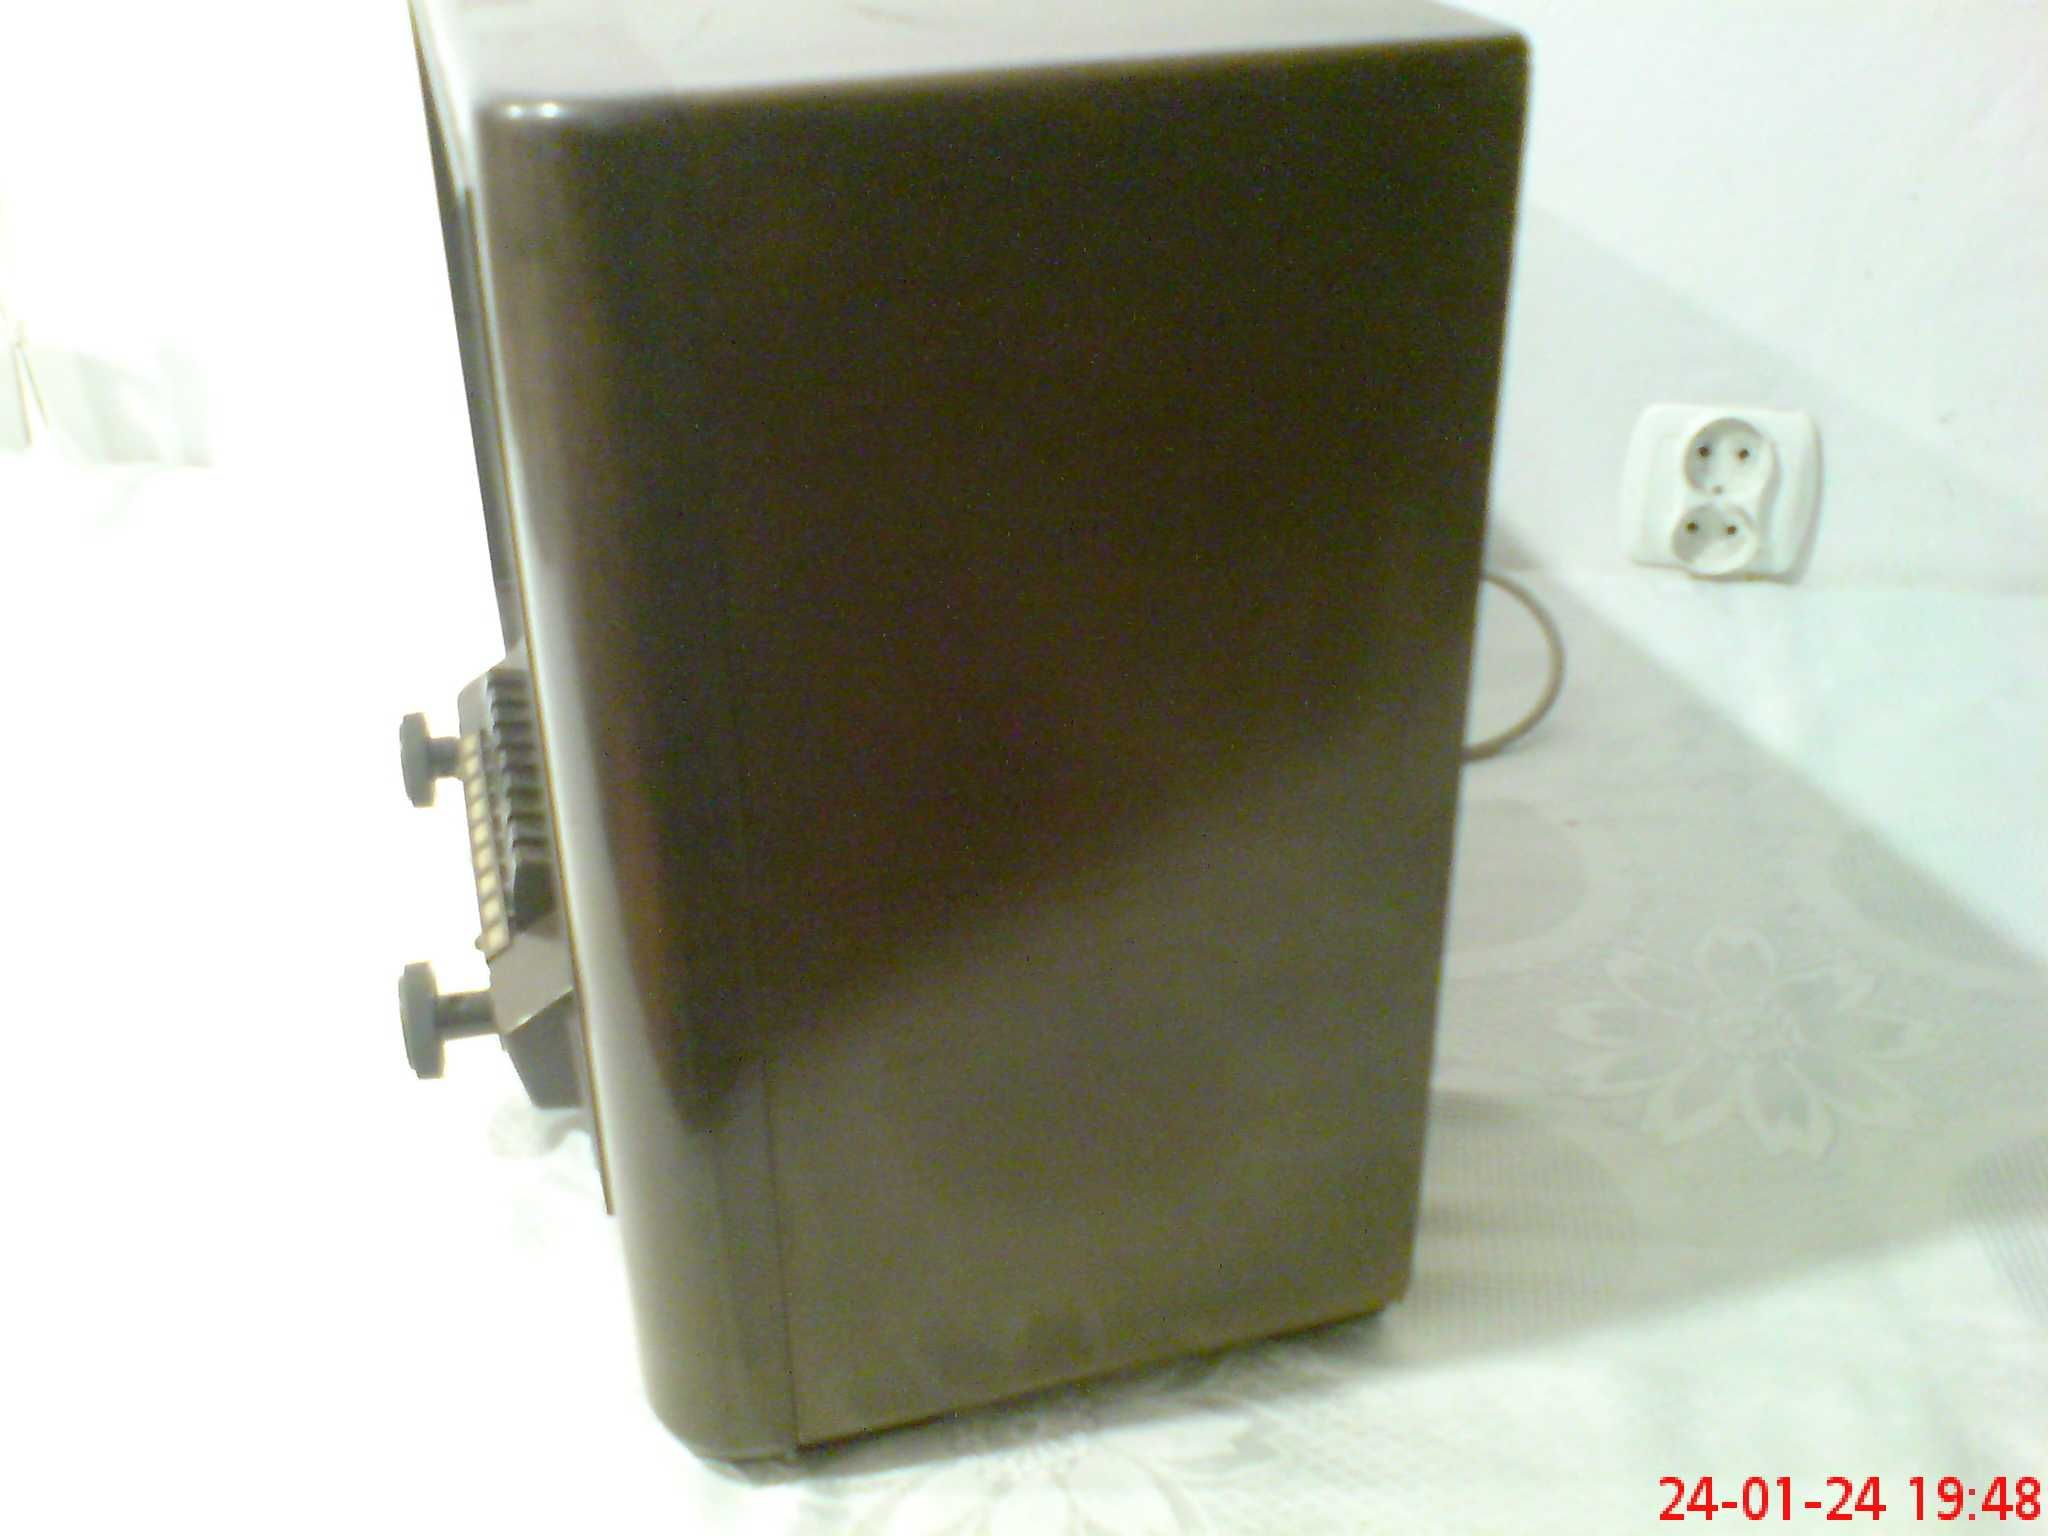 Przedwojenne radio Philips 680A, czyste, sprawne.